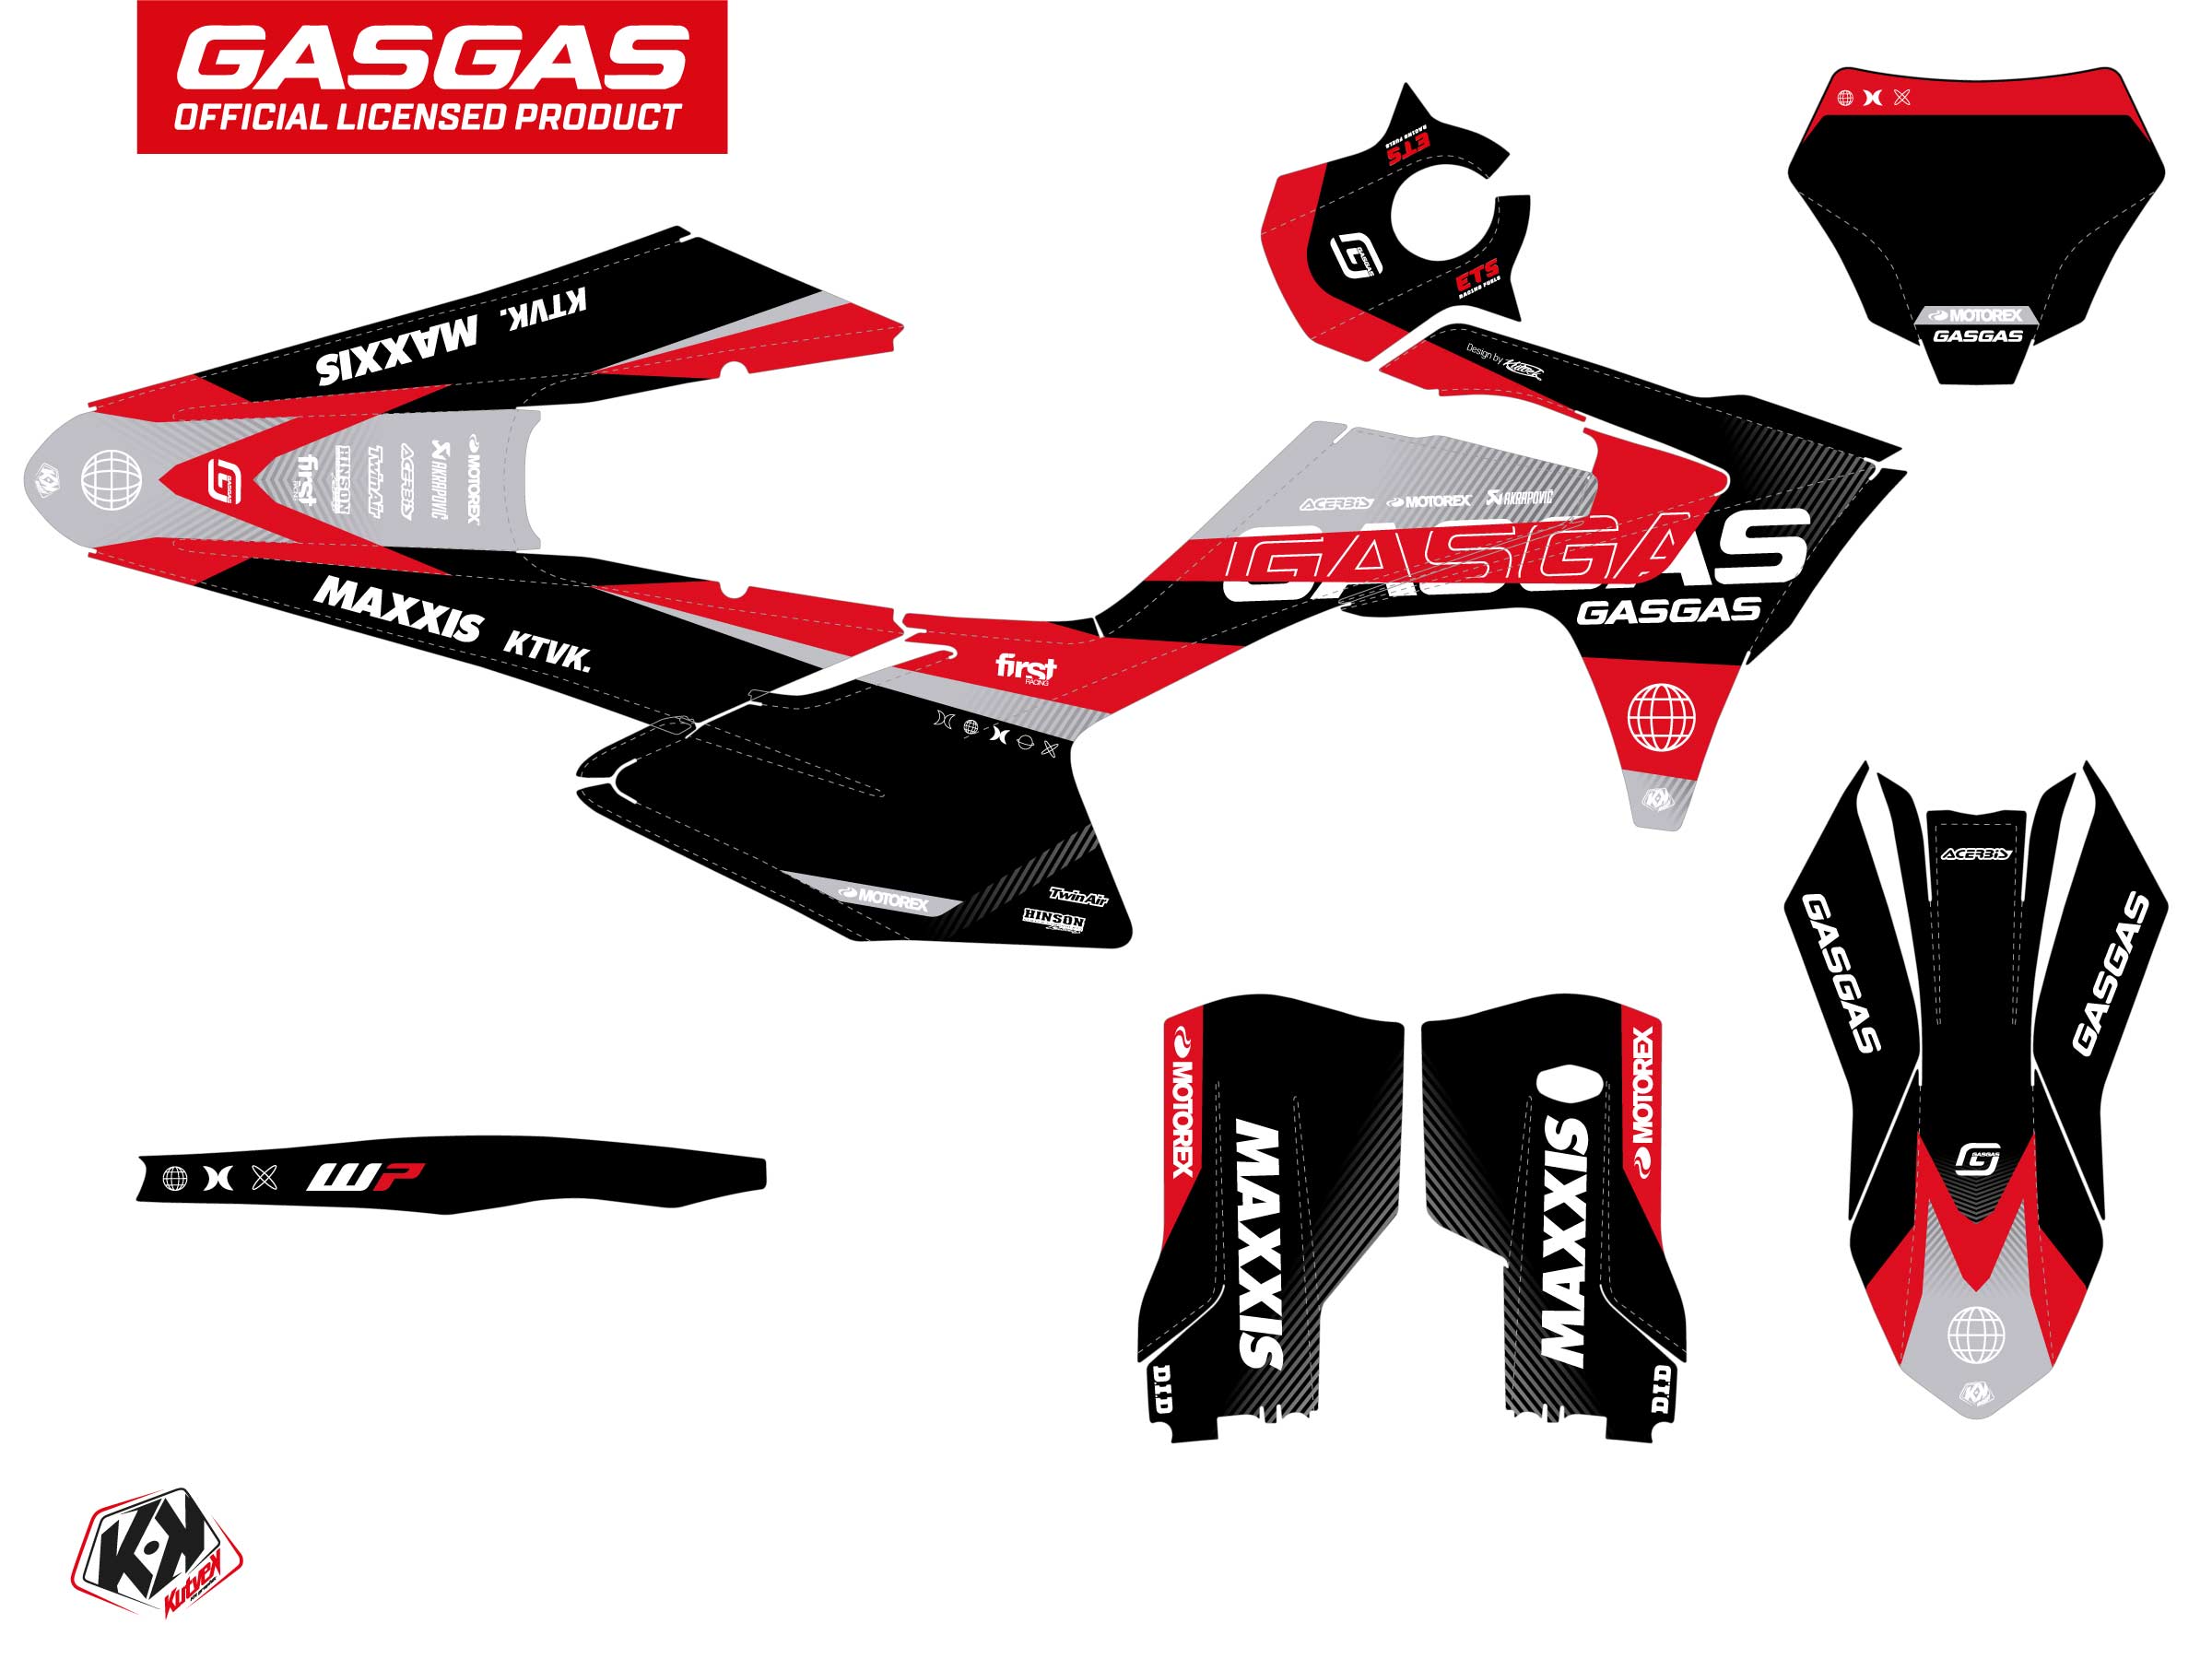 Gasgas Mc 250 F Dirt Bike Kanyon Graphic Kit Black